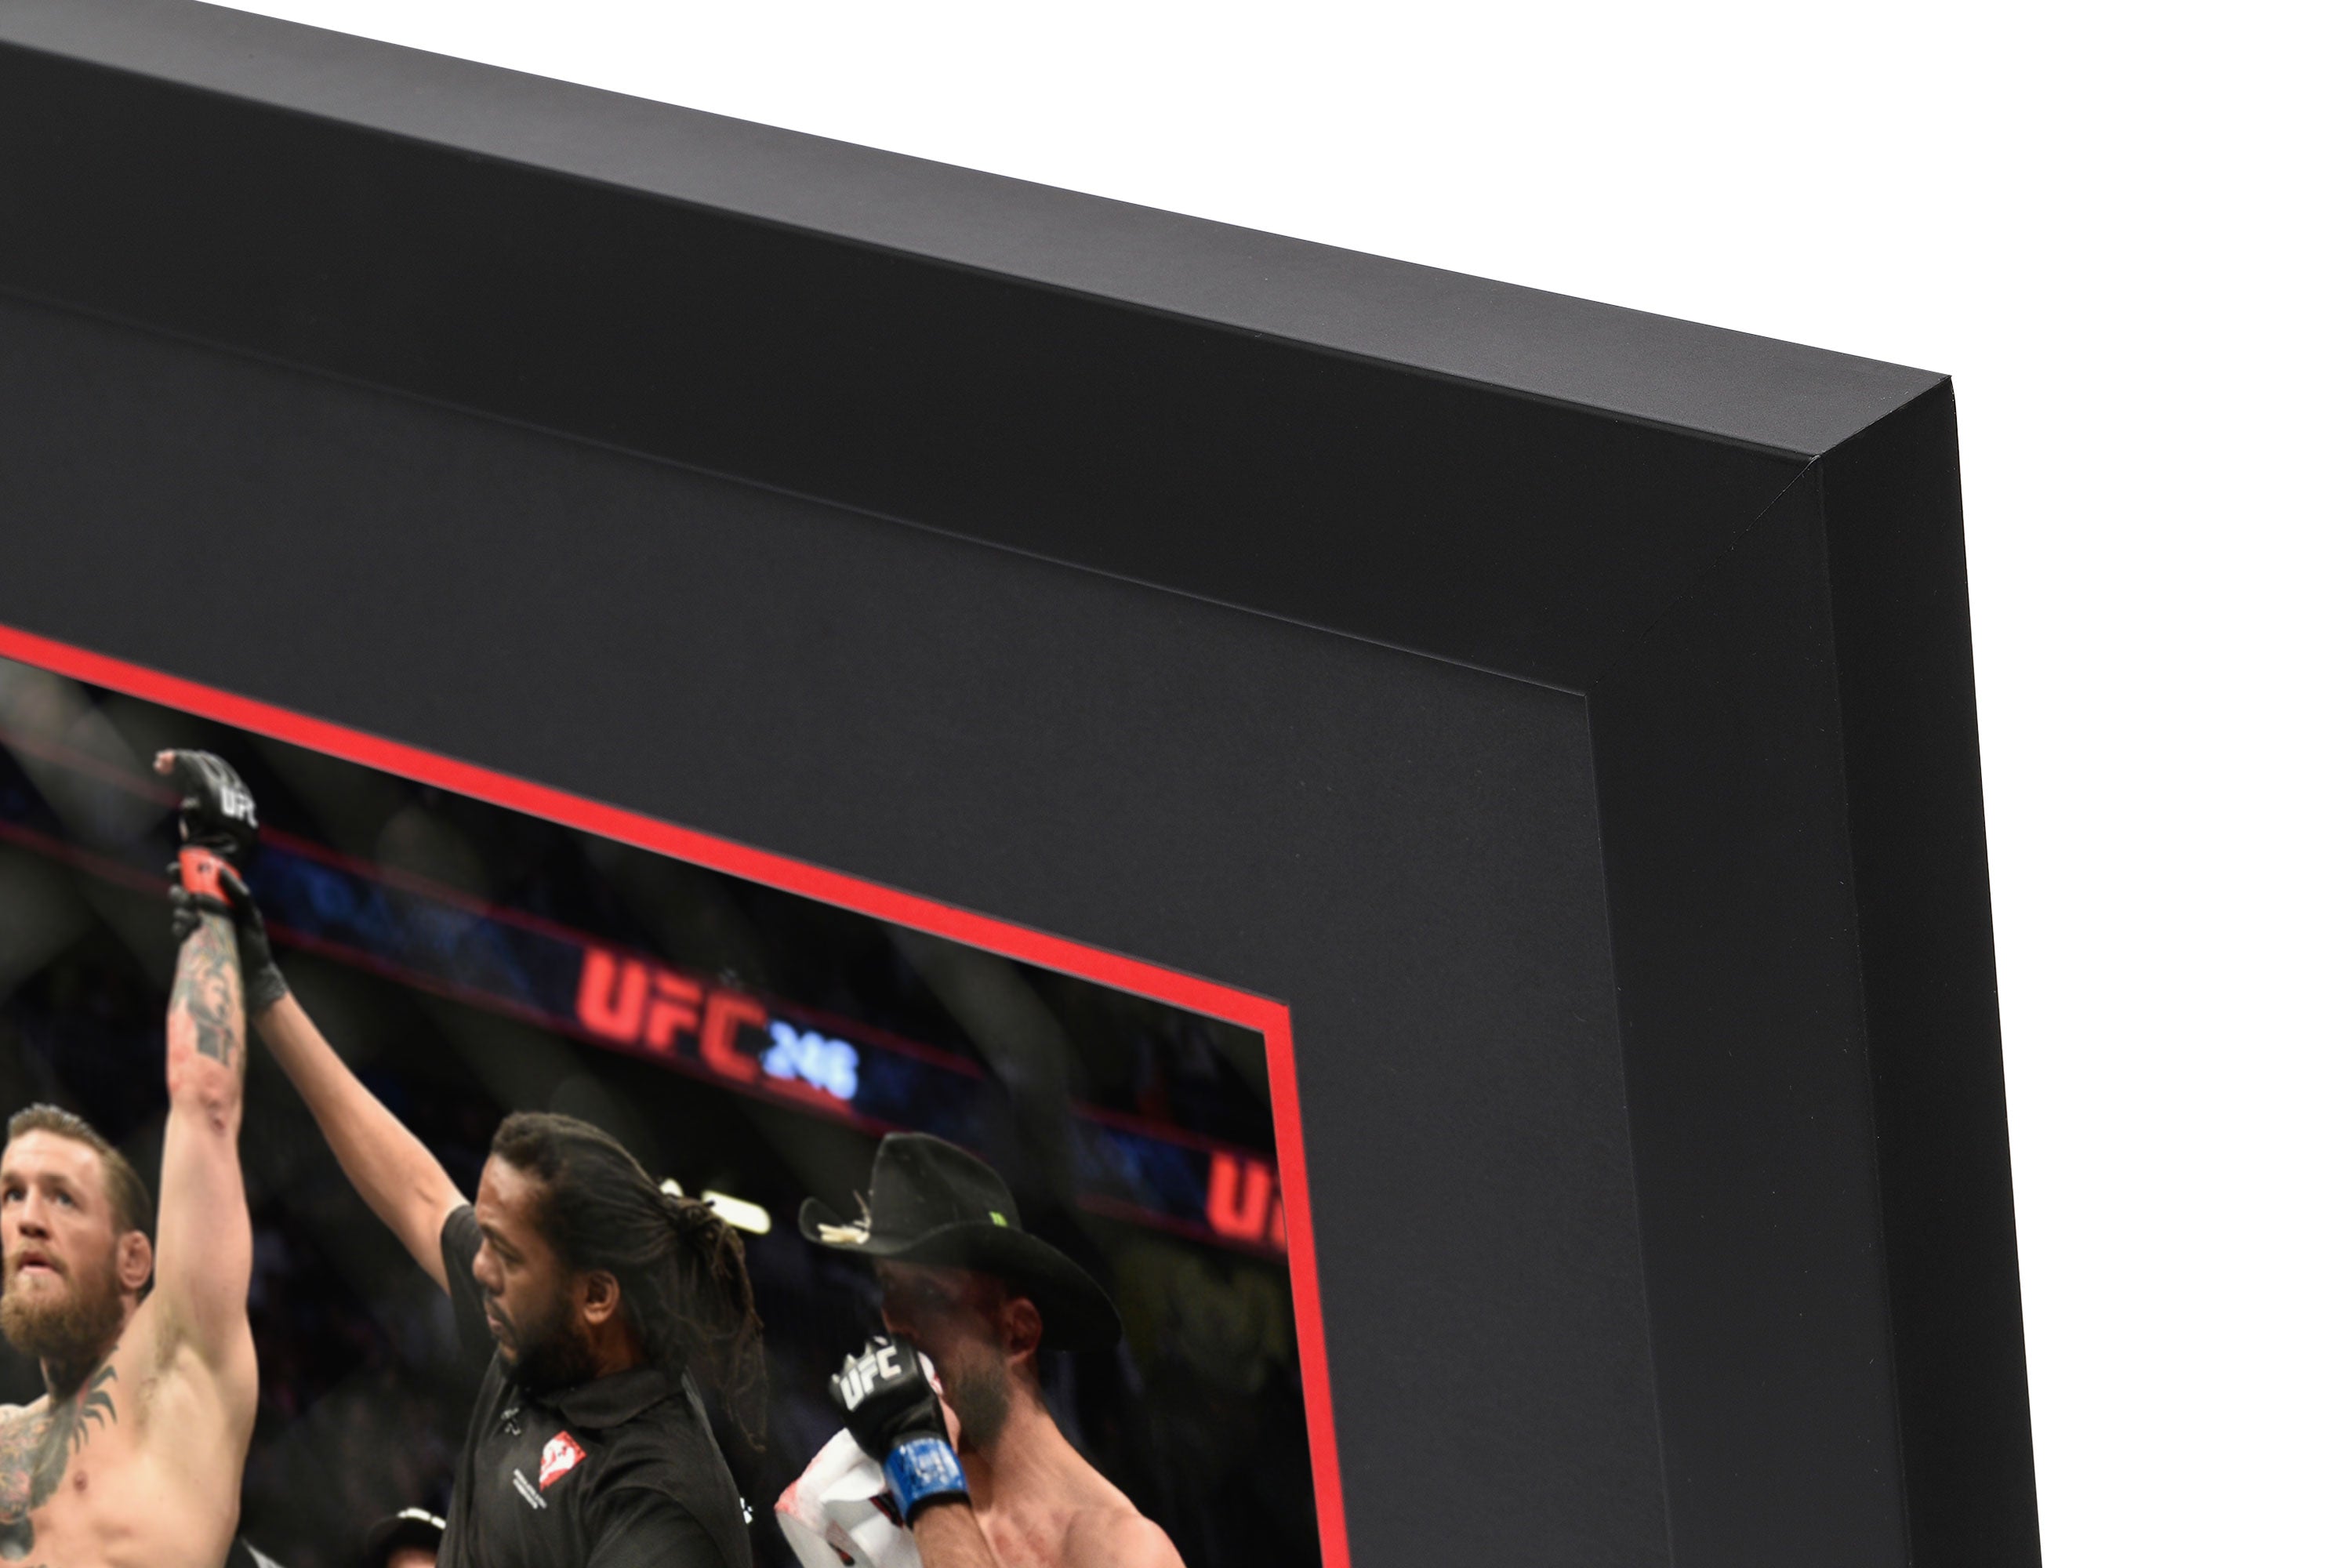 UFC 246 McGregor vs Cowboy Canvas & Photo